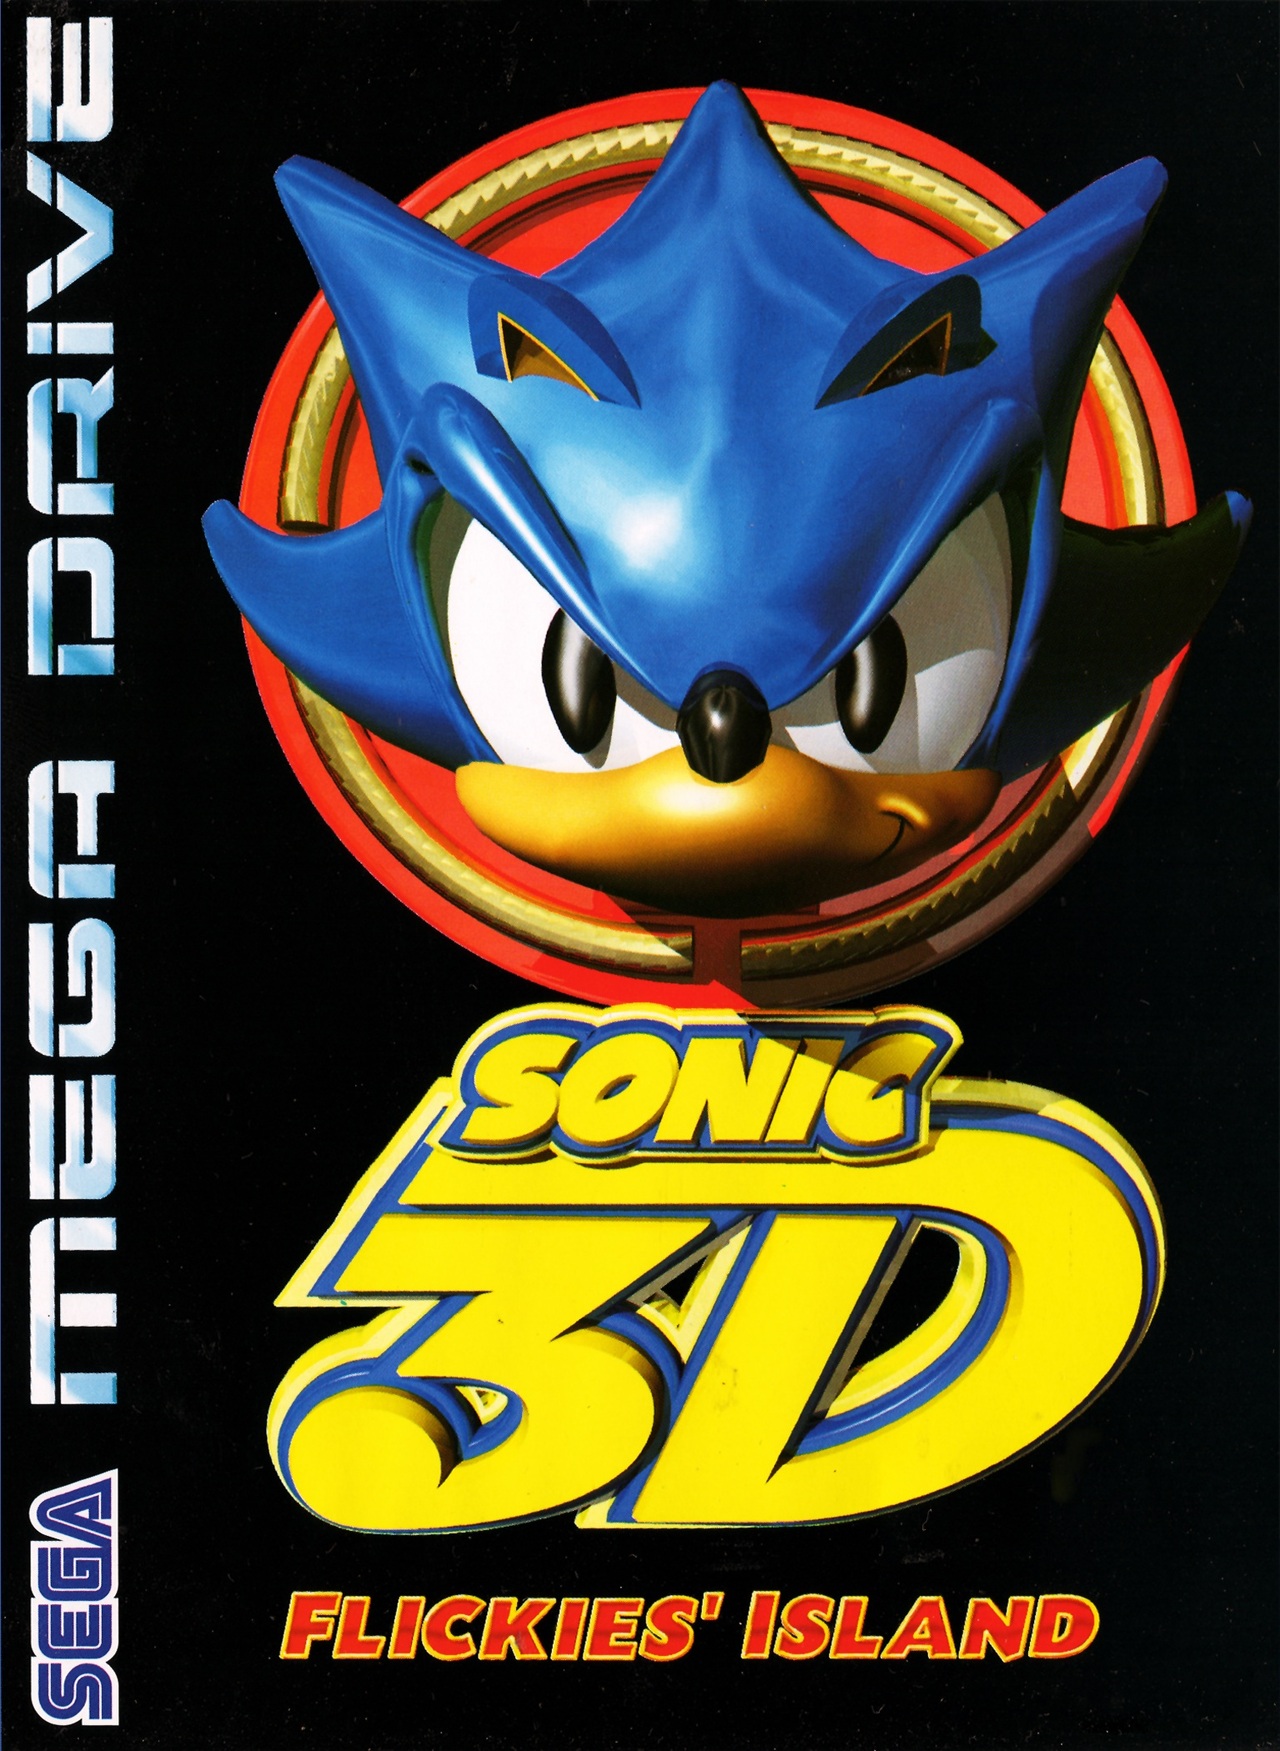 jaquette du jeu vidéo Sonic 3D : Flickies' Island